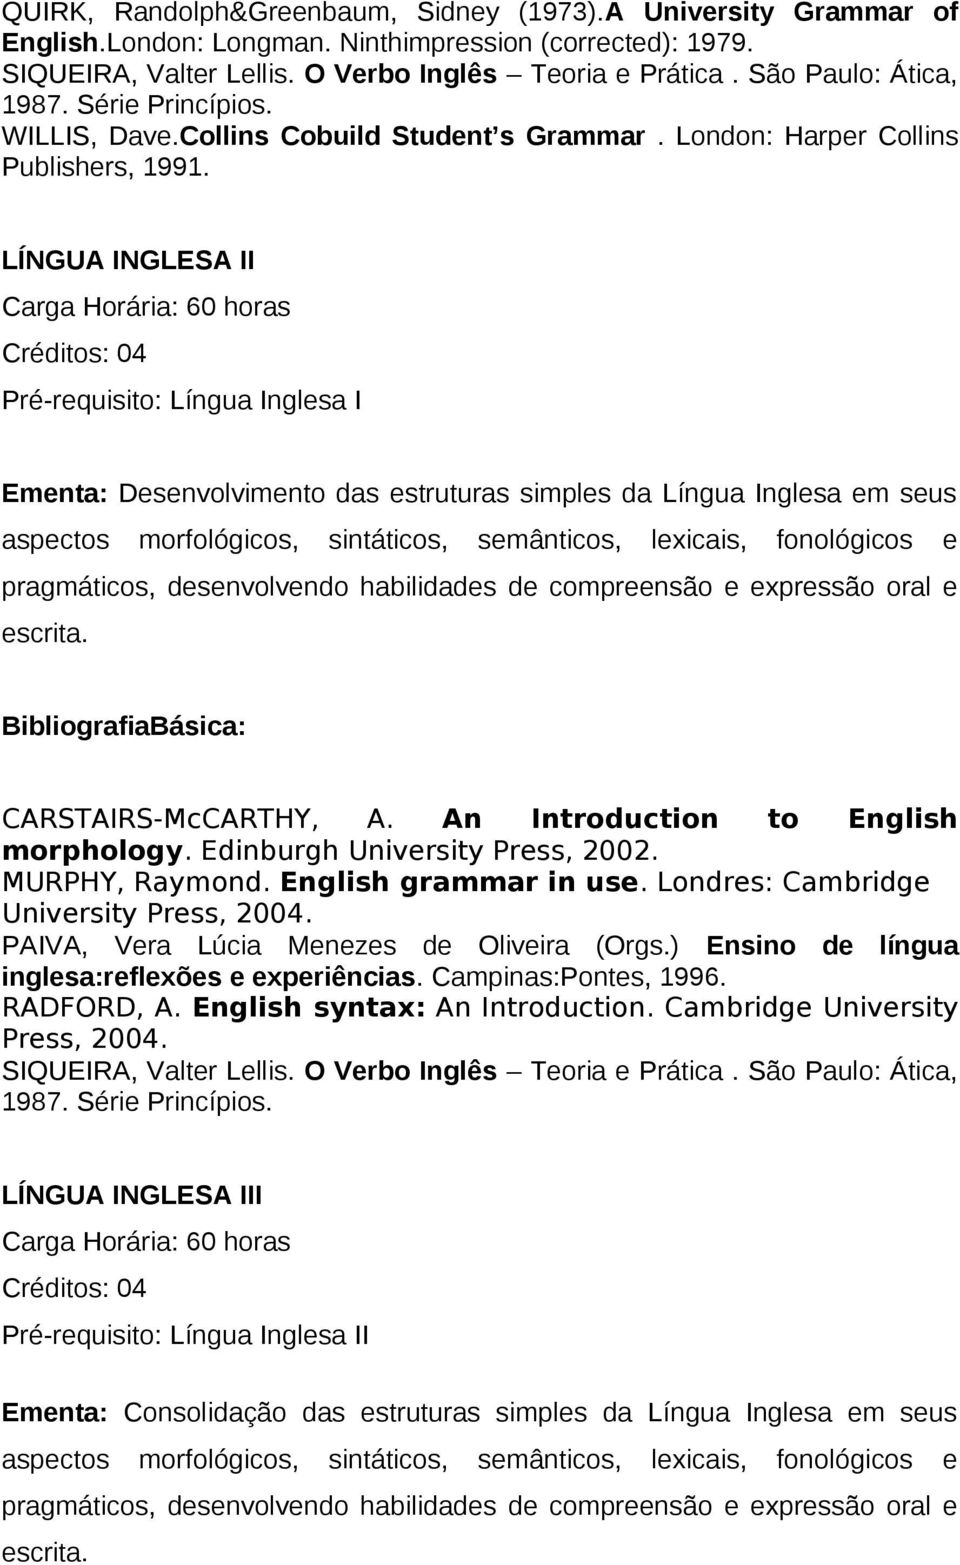 LÍNGUA INGLESA II Pré-requisito: Língua Inglesa I Ementa: Desenvolvimento das estruturas simples da Língua Inglesa em seus aspectos morfológicos, sintáticos, semânticos, lexicais, fonológicos e